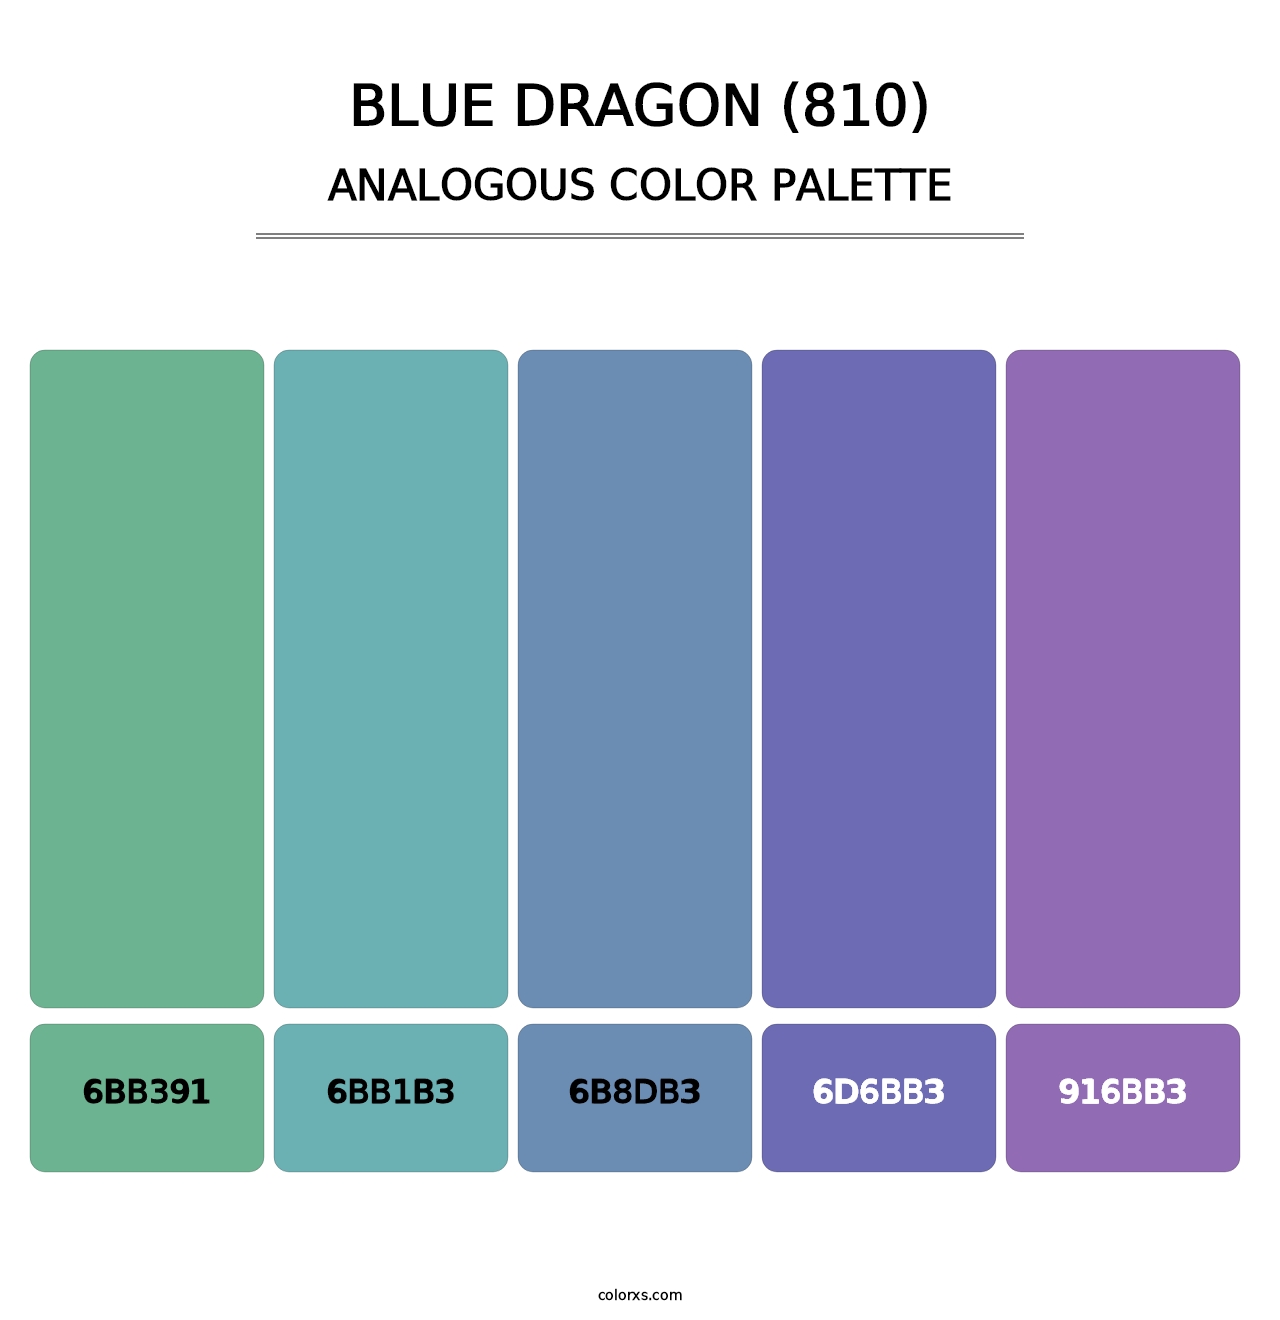 Blue Dragon (810) - Analogous Color Palette